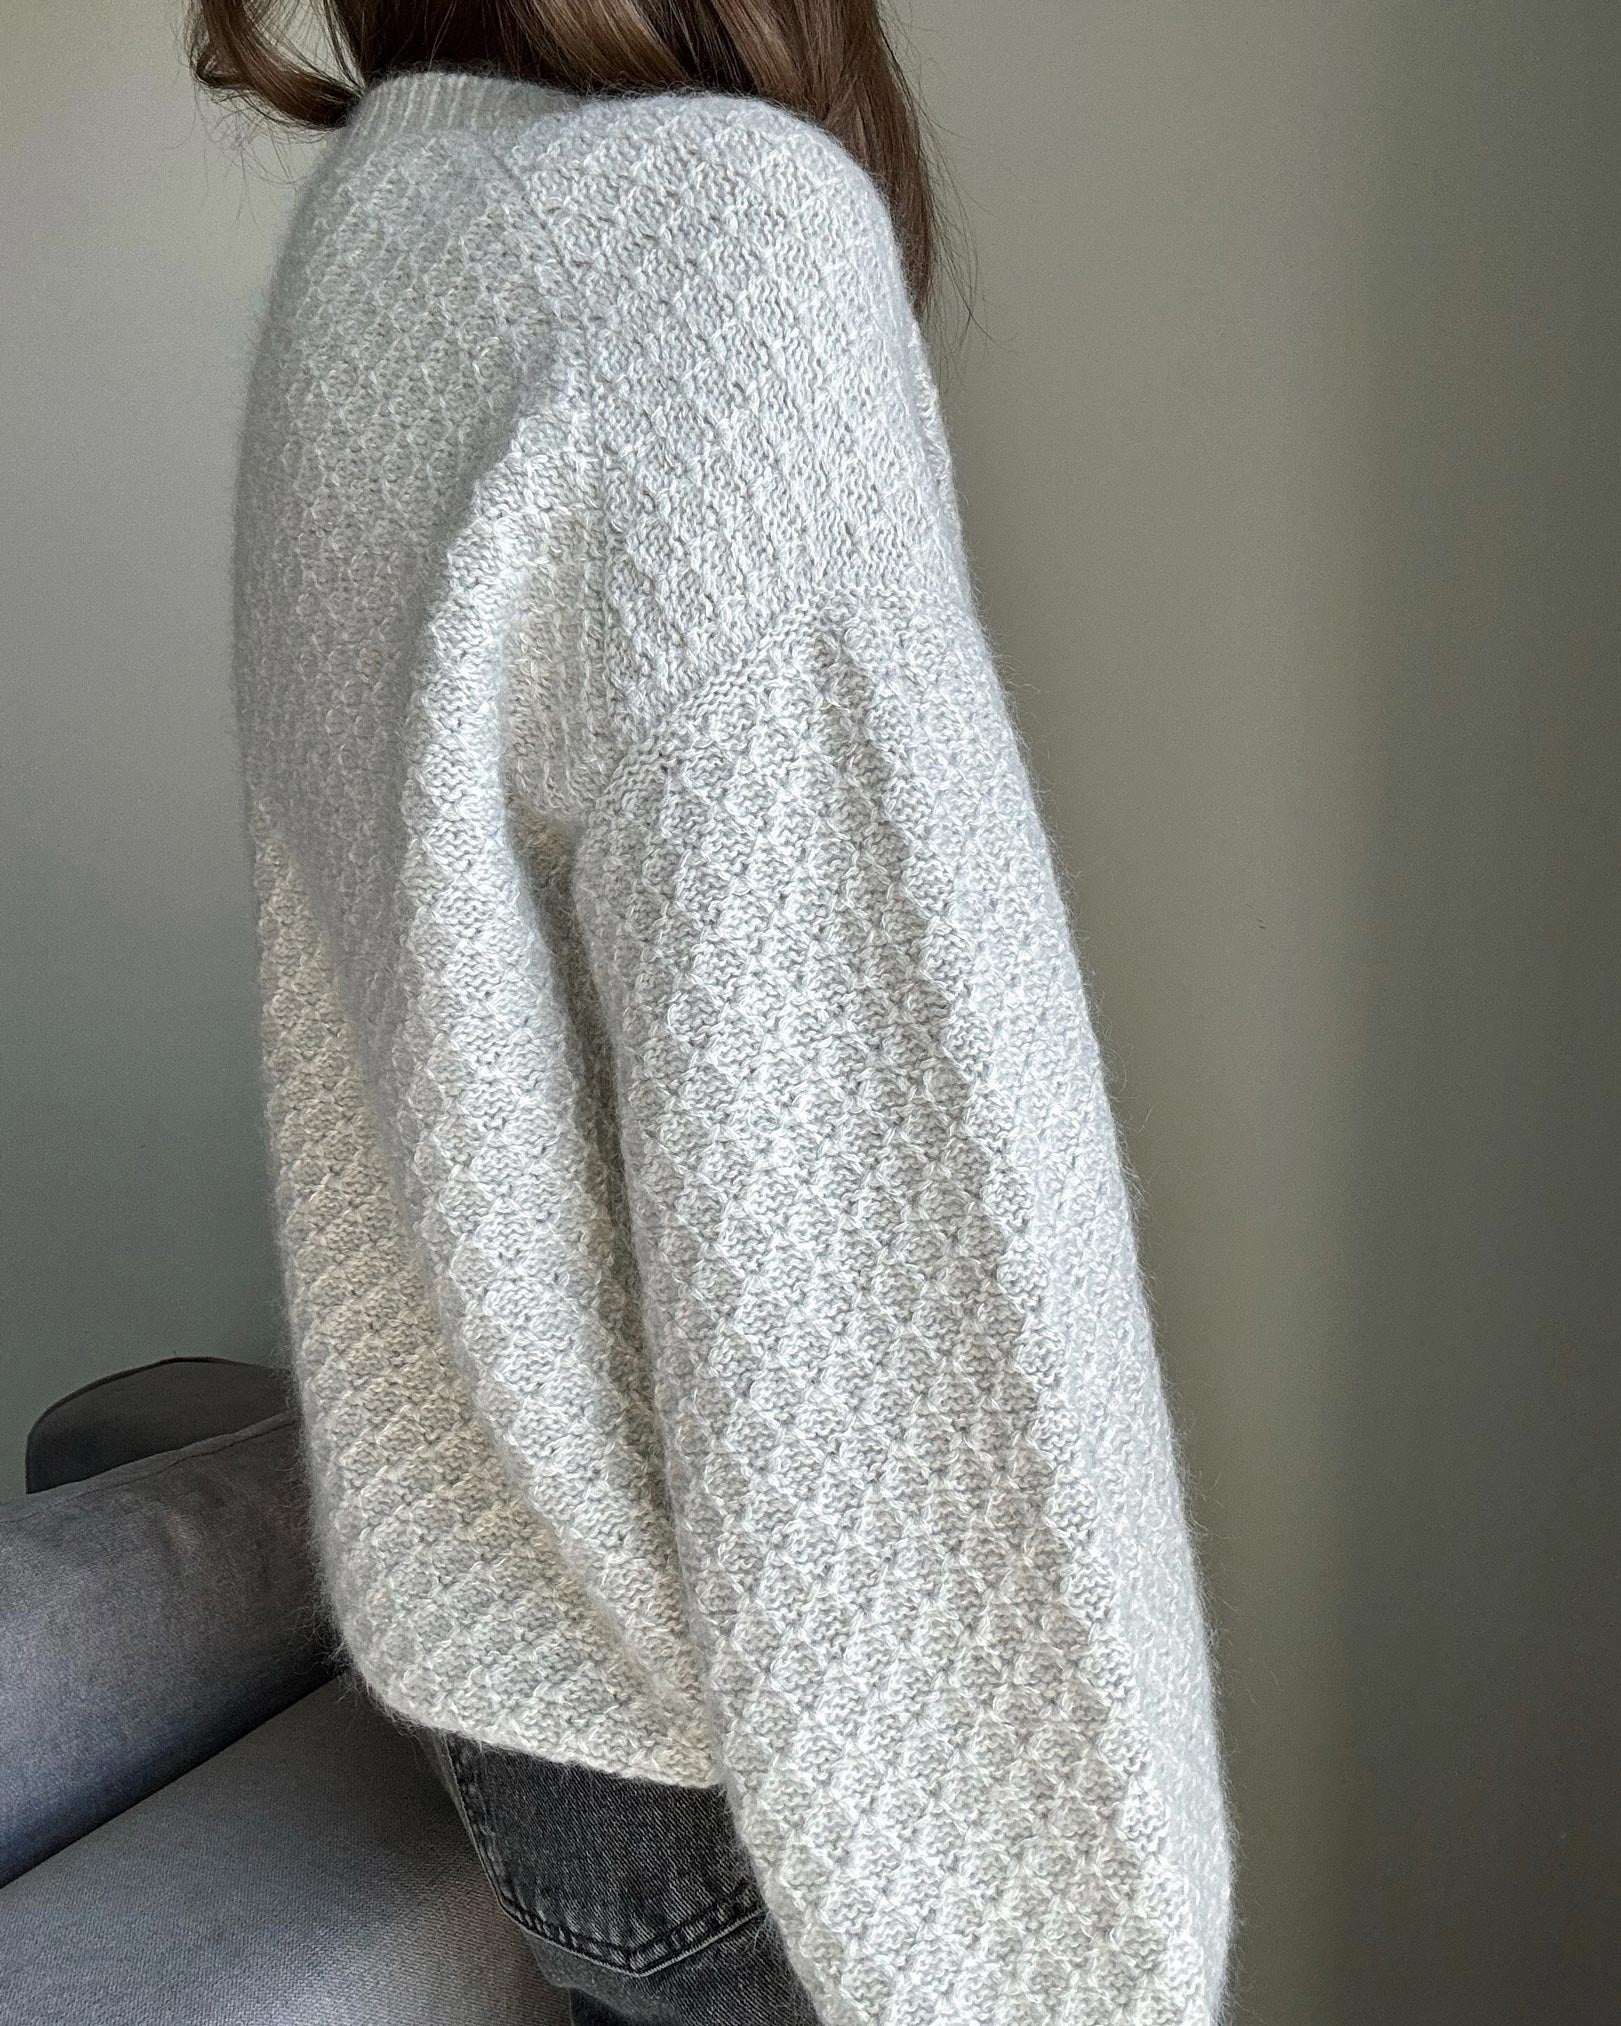 Kobiecy i miękki wzór na dziergany sweter Francesca, idealny dla zaawansowanych dziewiarek.